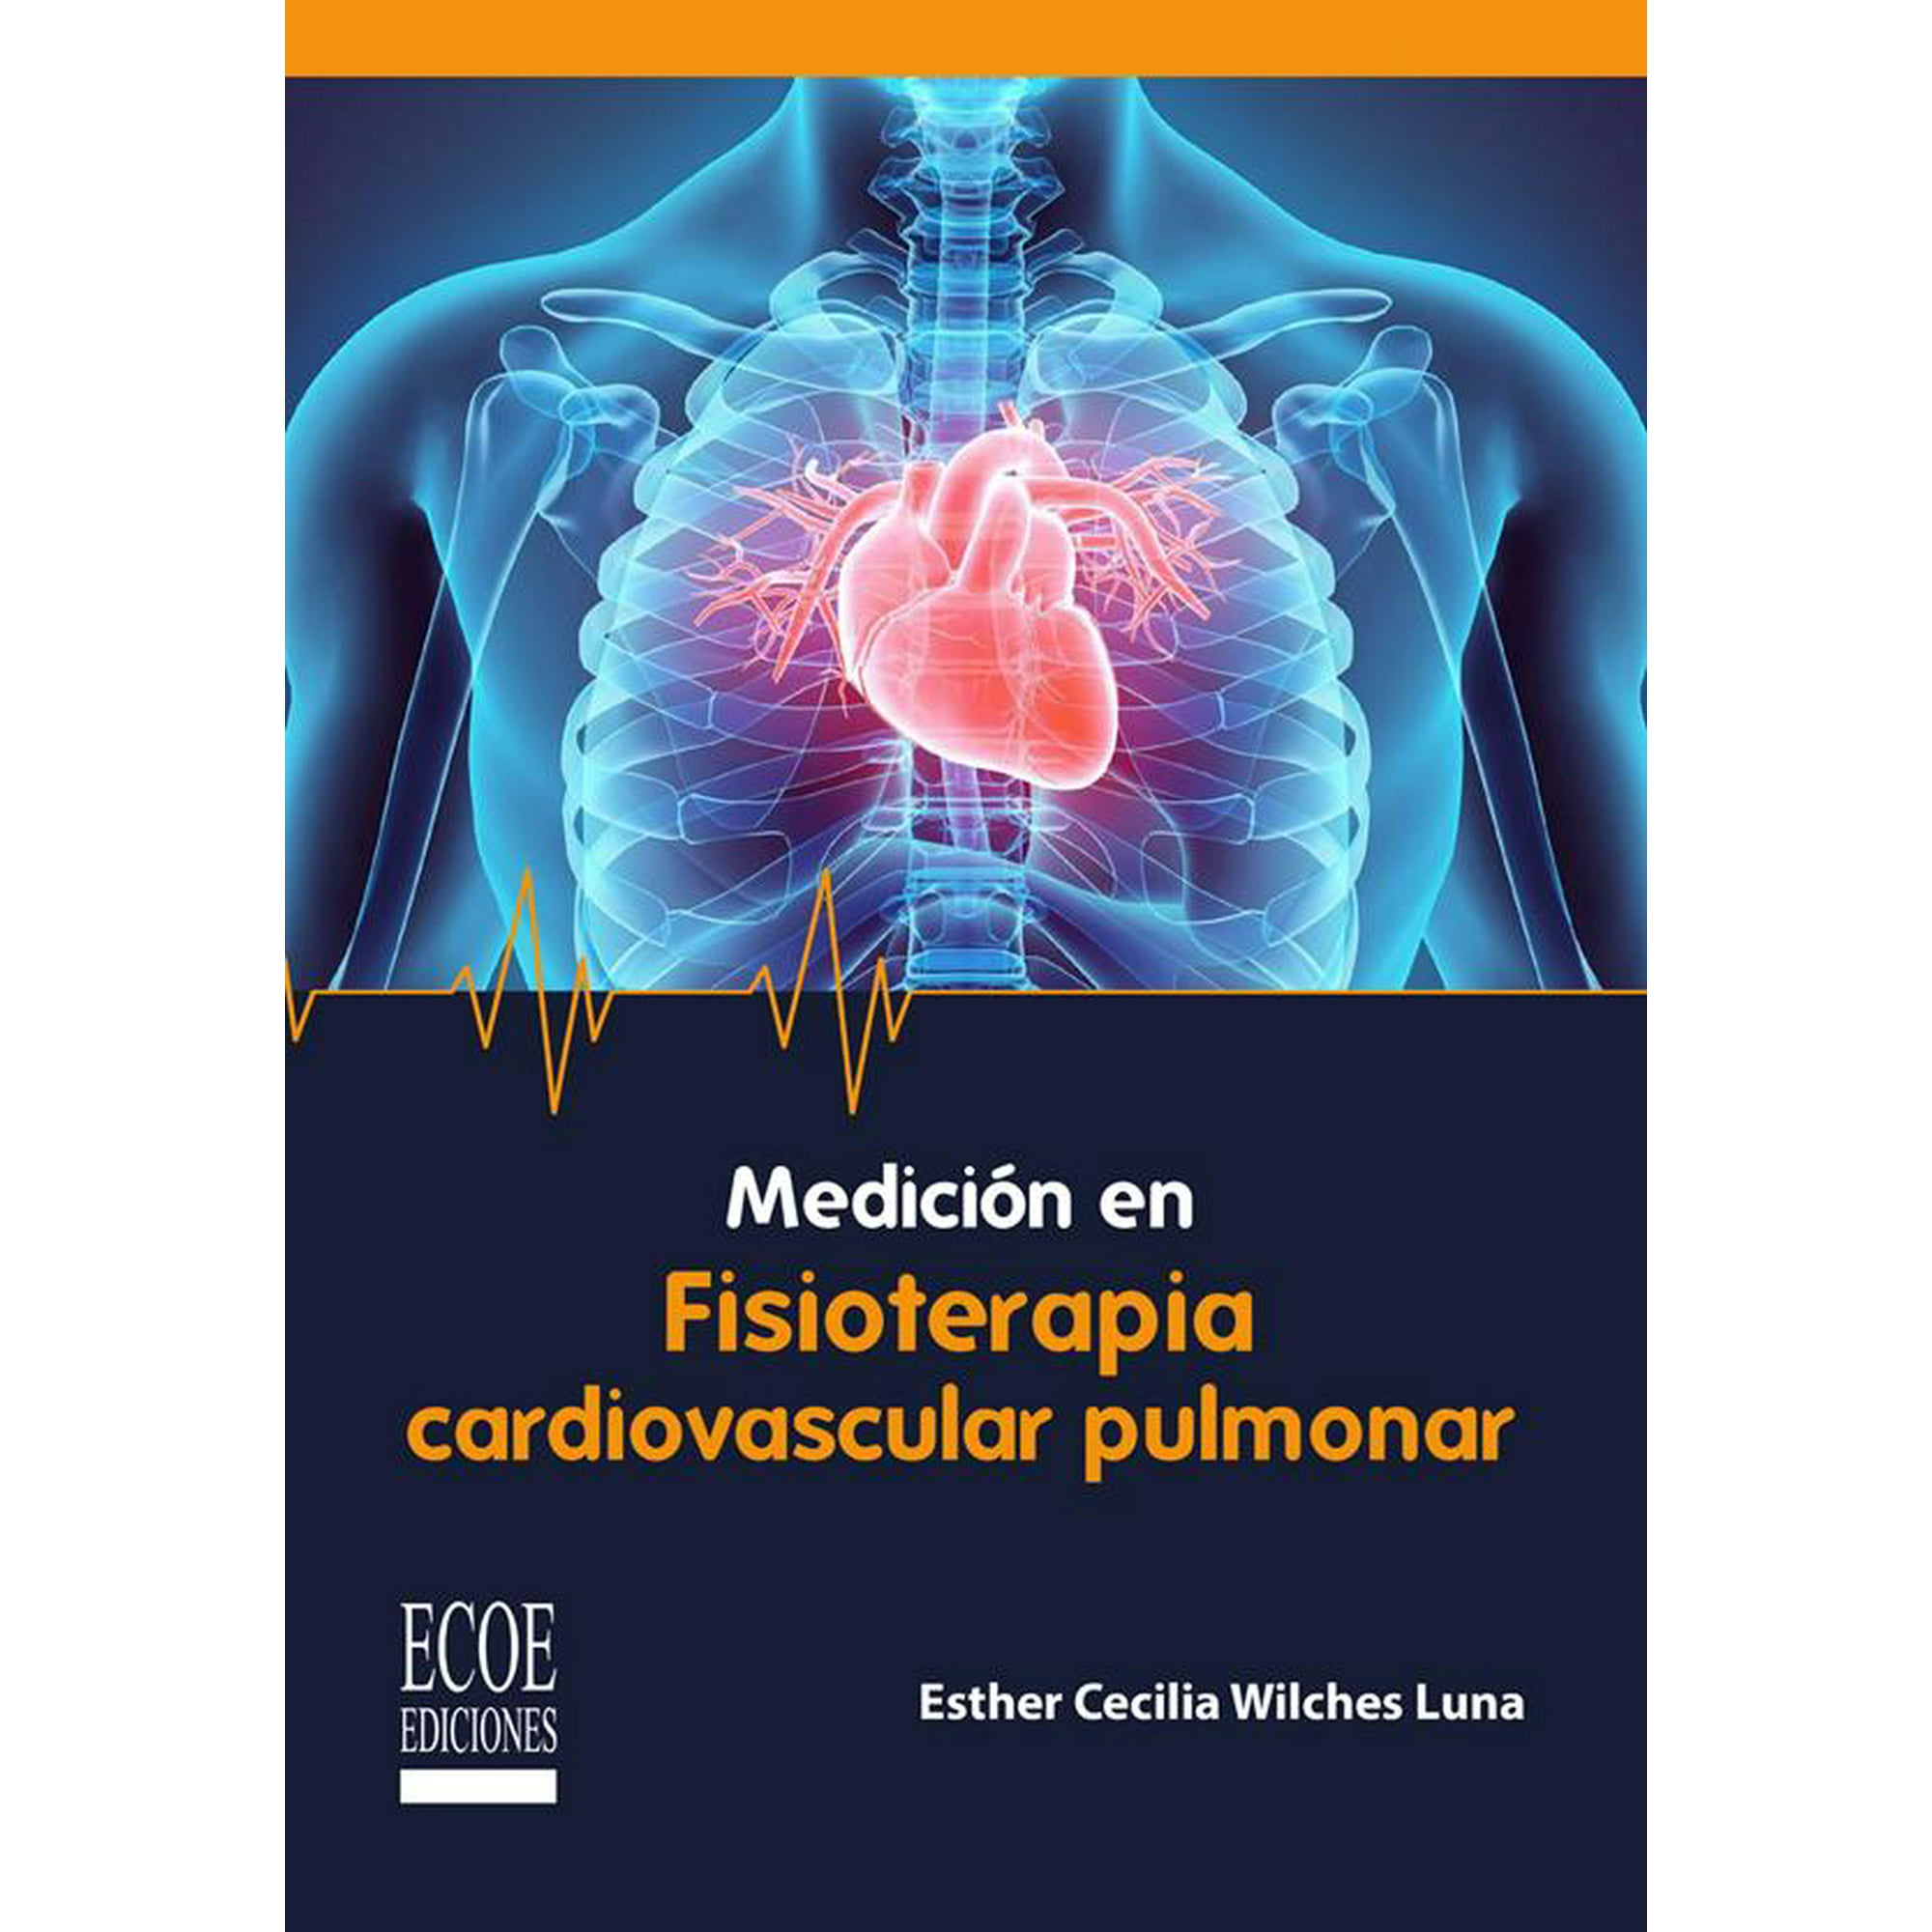 Medición en fisioterapia cardiopulmonar ecoe ediciones 9789585031012